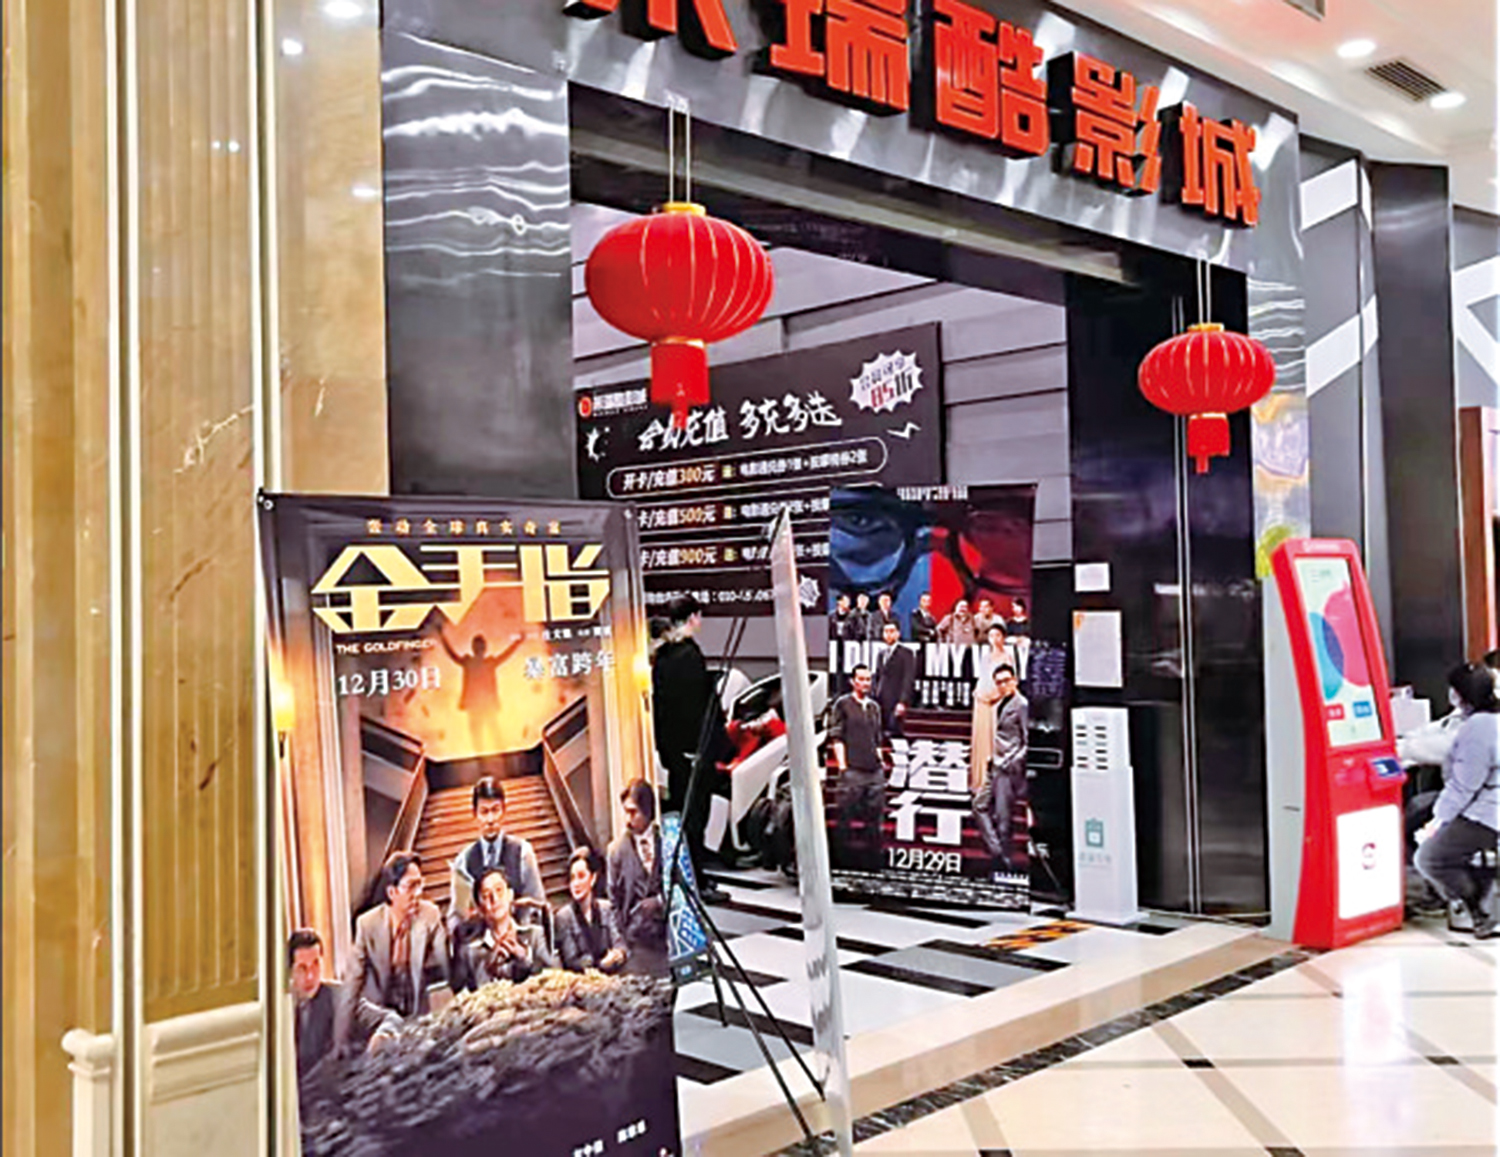 　　圖：北京某電影院入口處擺放《金手指》、《潛行》宣傳海報。\大公報記者任芳頡攝